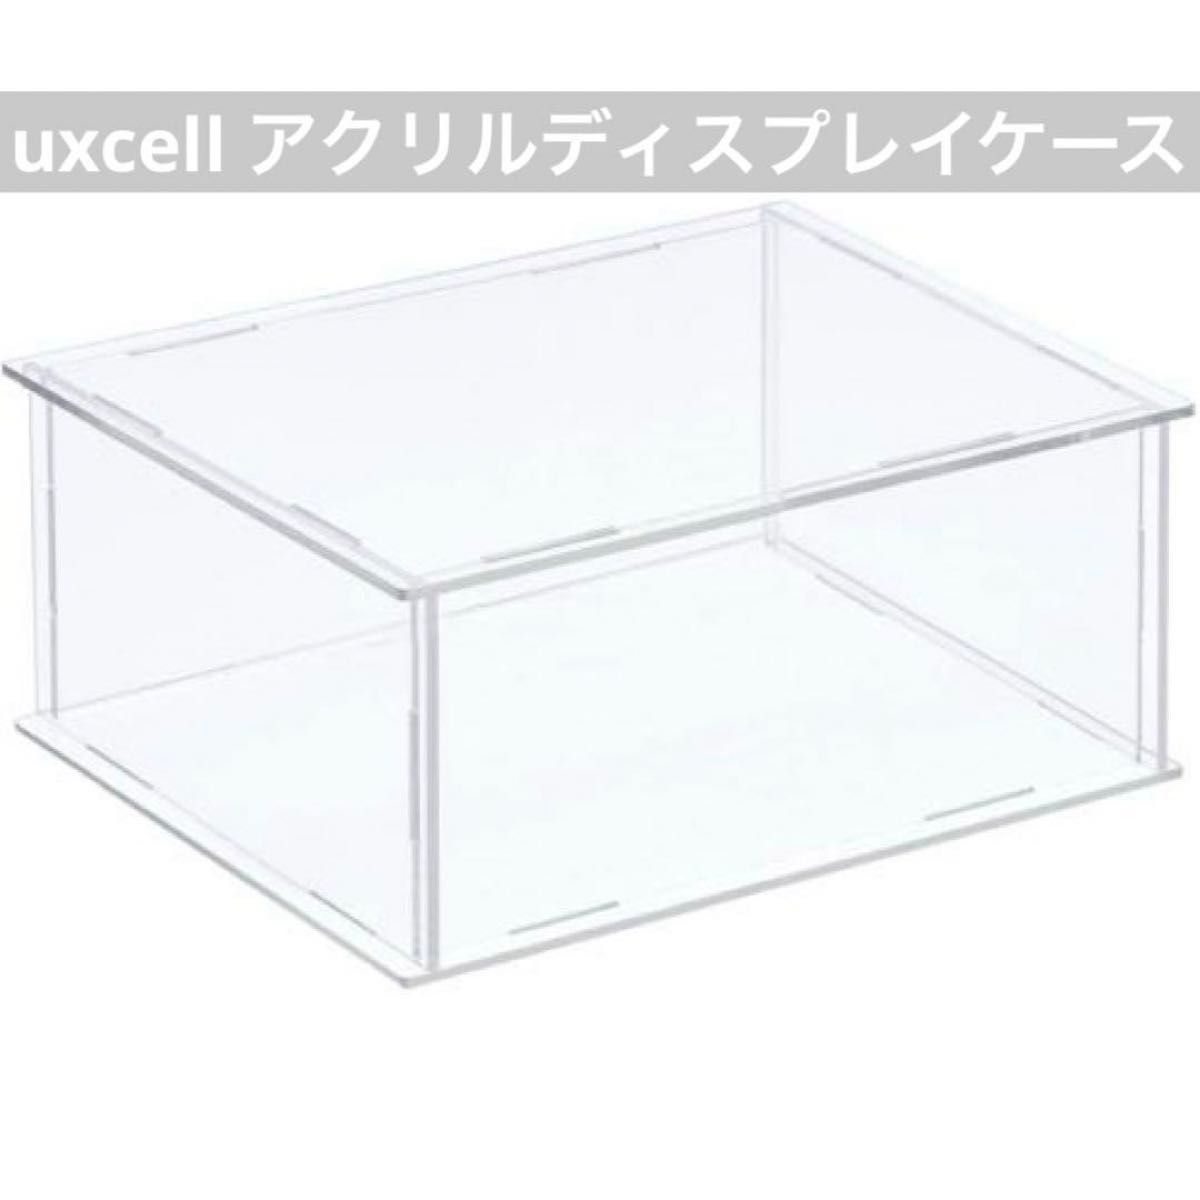 uxcell アクリルディスプレイケース ボックス 26x21x10.5cm